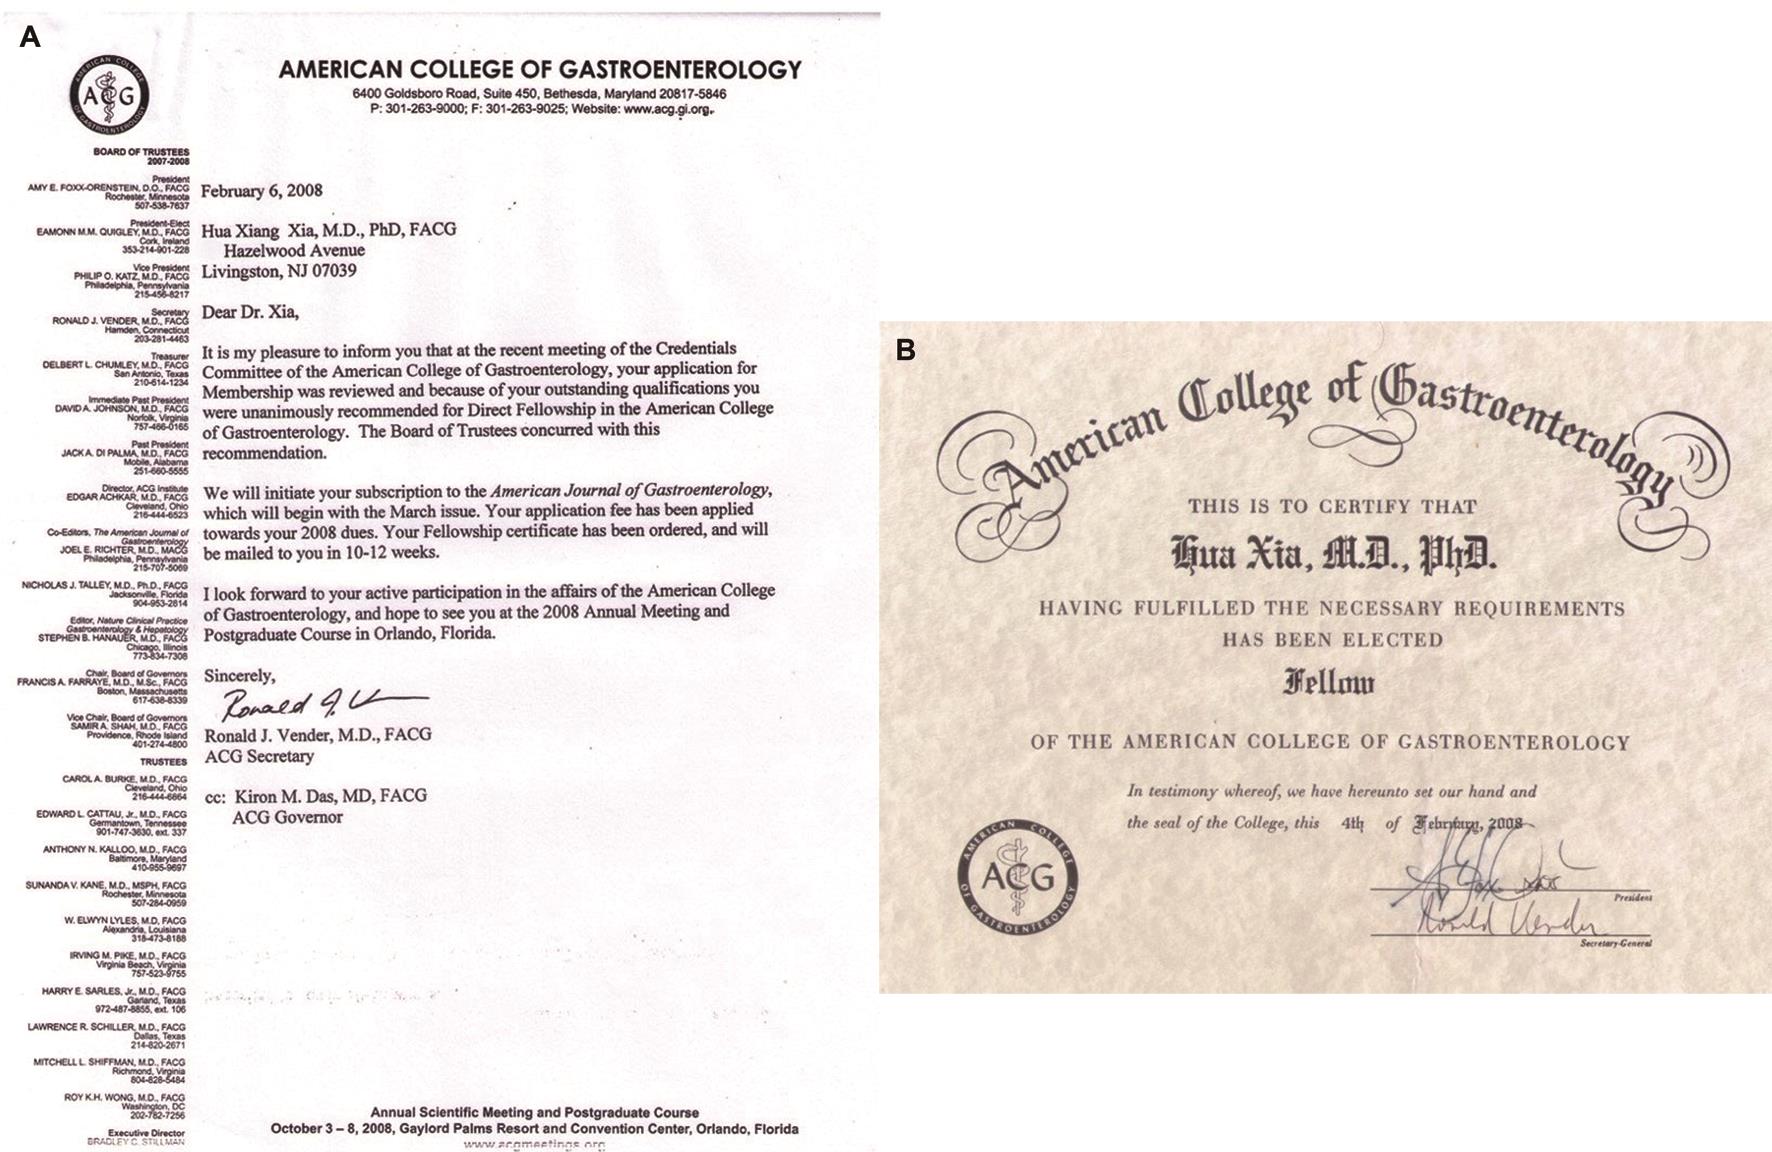 2008年被选为美国胃肠病学学院院士 (Fellow of American College of Gastroenterology) 的通知函（A）和证书（B）。